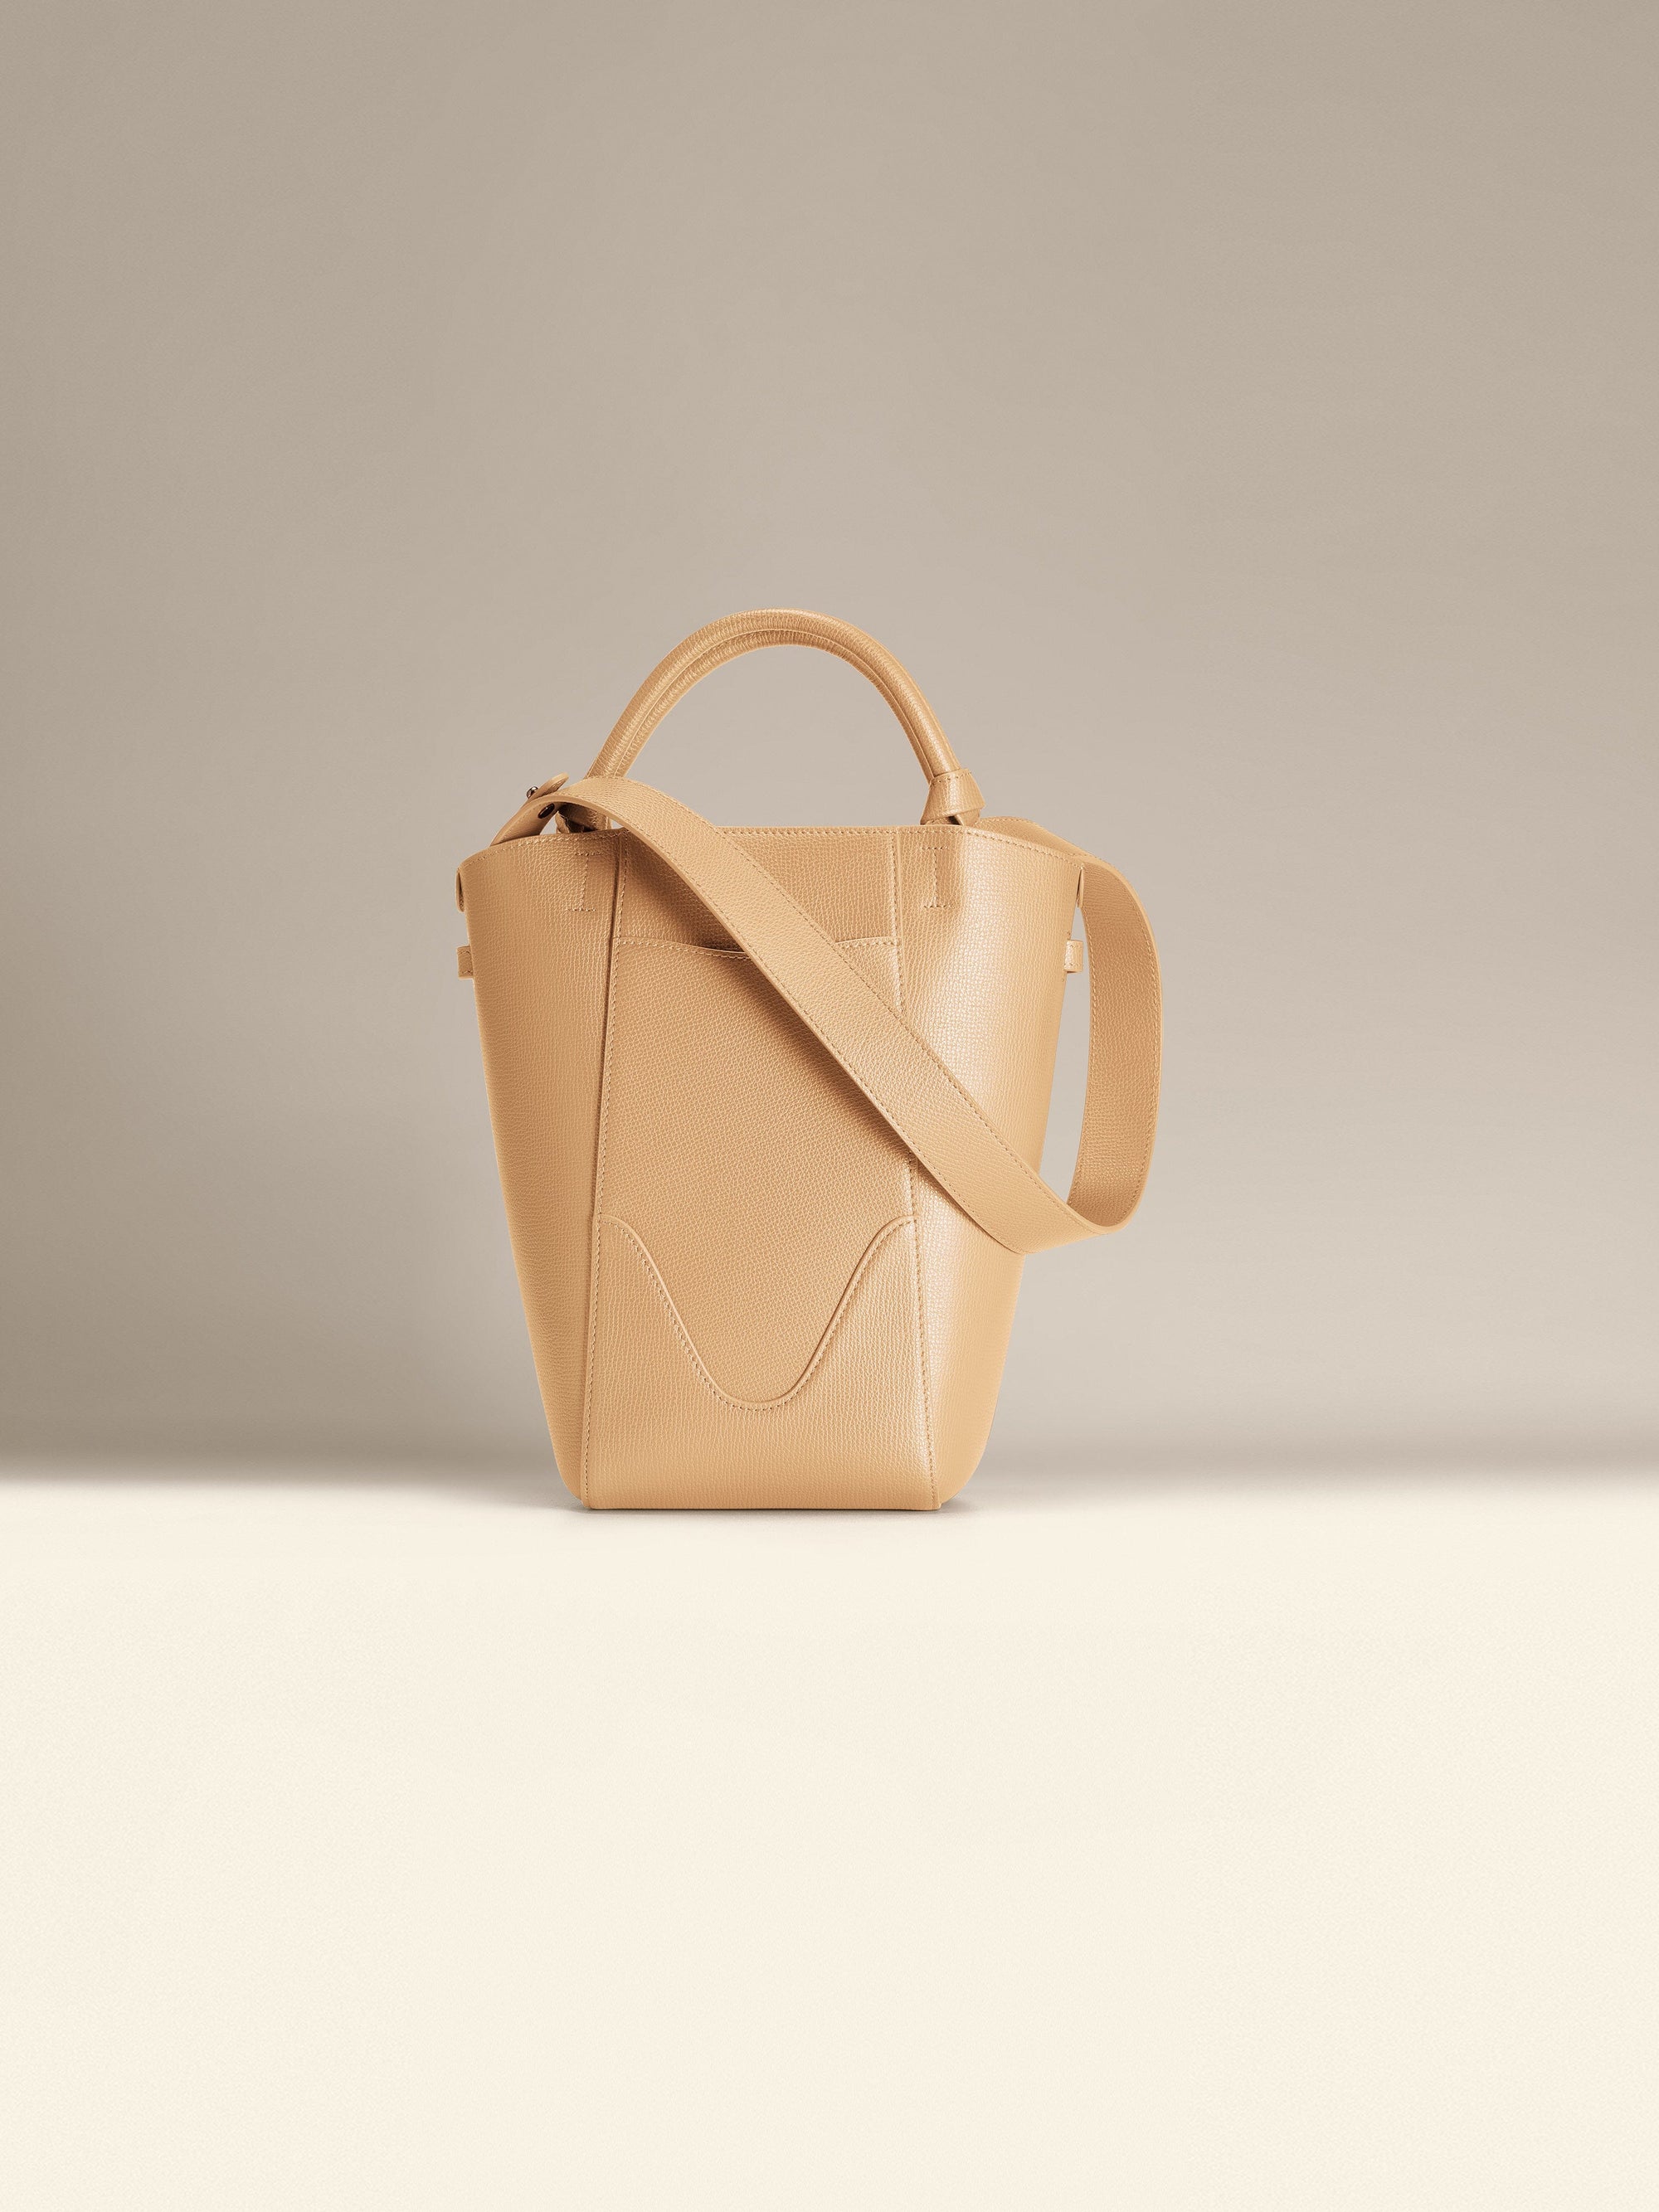 Small Bucket Bag - Lightweight Handbag for Women - Light Beige